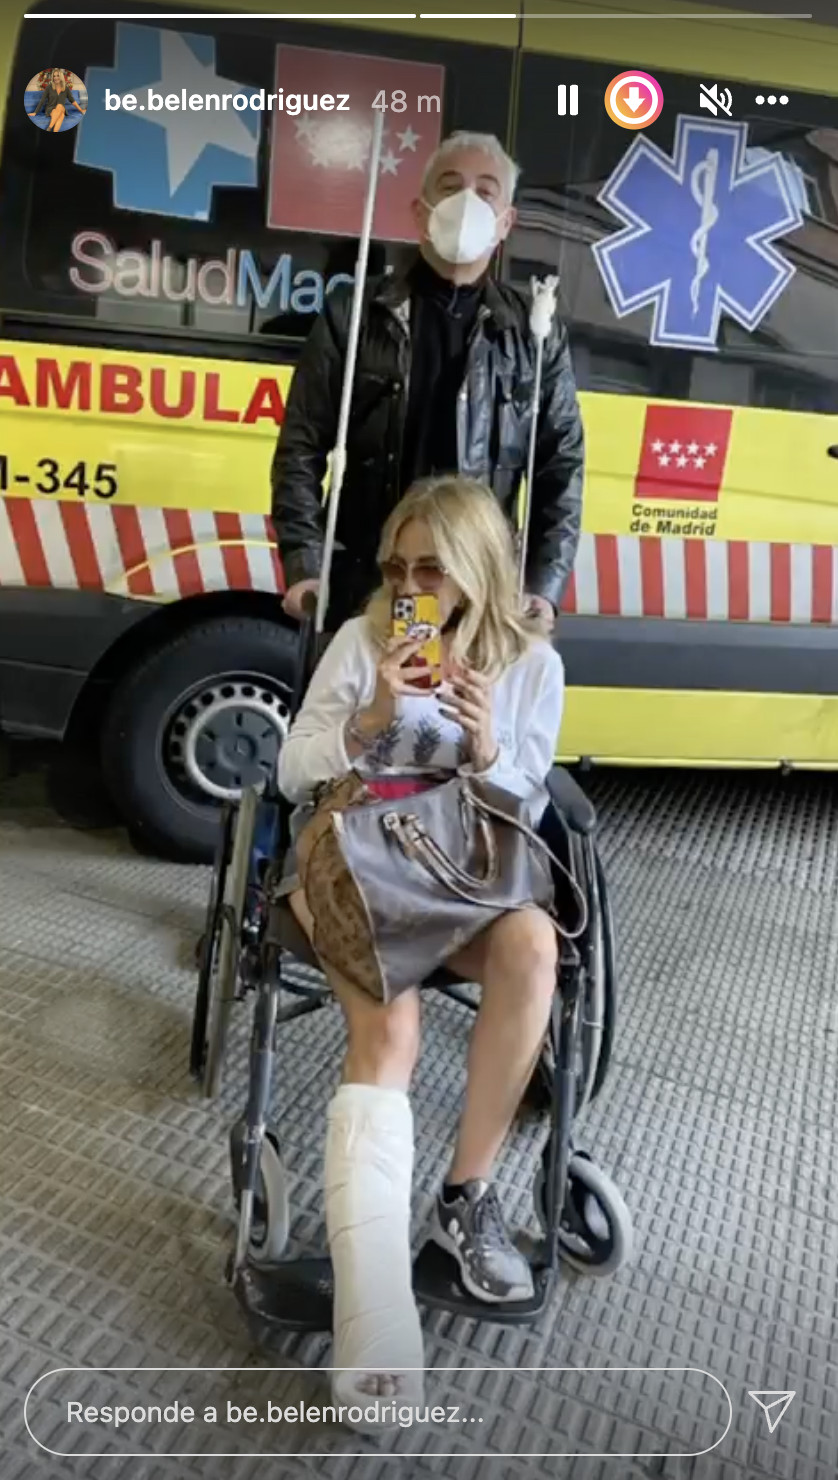 Belén Rodríguez con una pierna escayolada en Instagram / @be.belenrodriguez